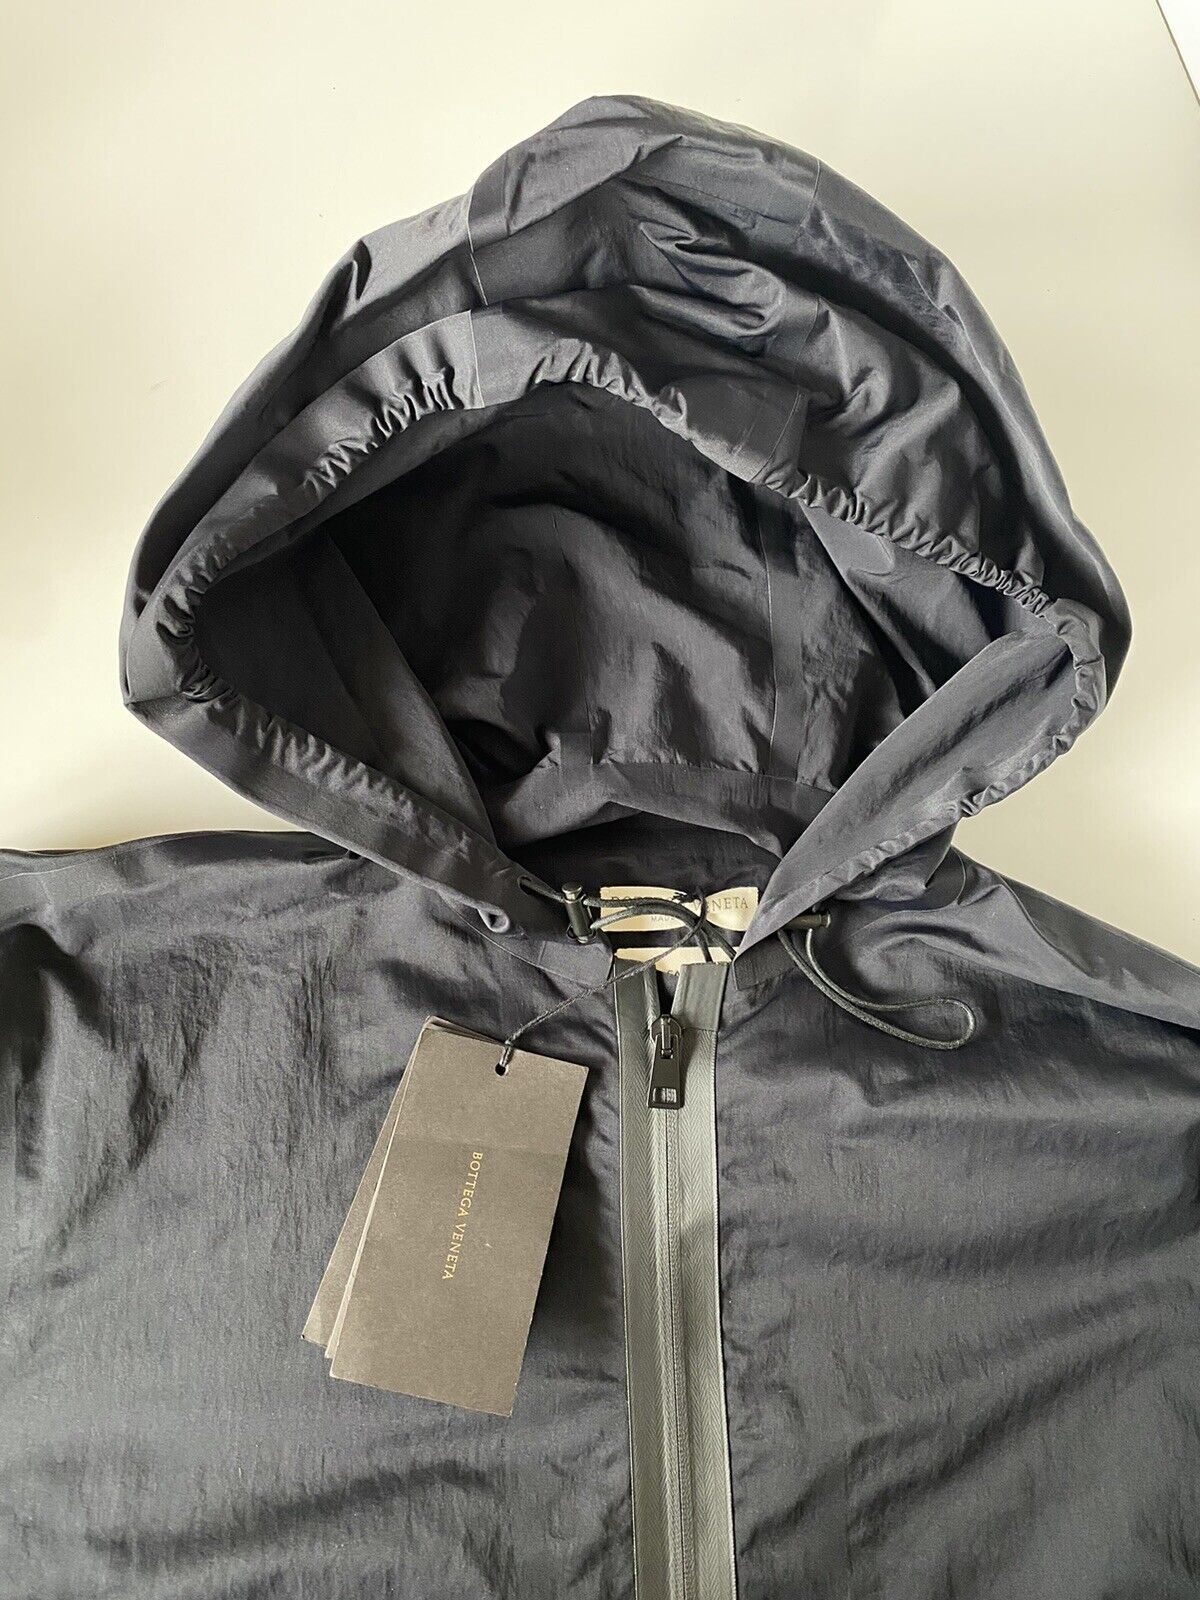 СЗТ 1850 долларов США Bottega Veneta Мужская рубашка из технического нейлона, черная куртка с капюшоном 40 США